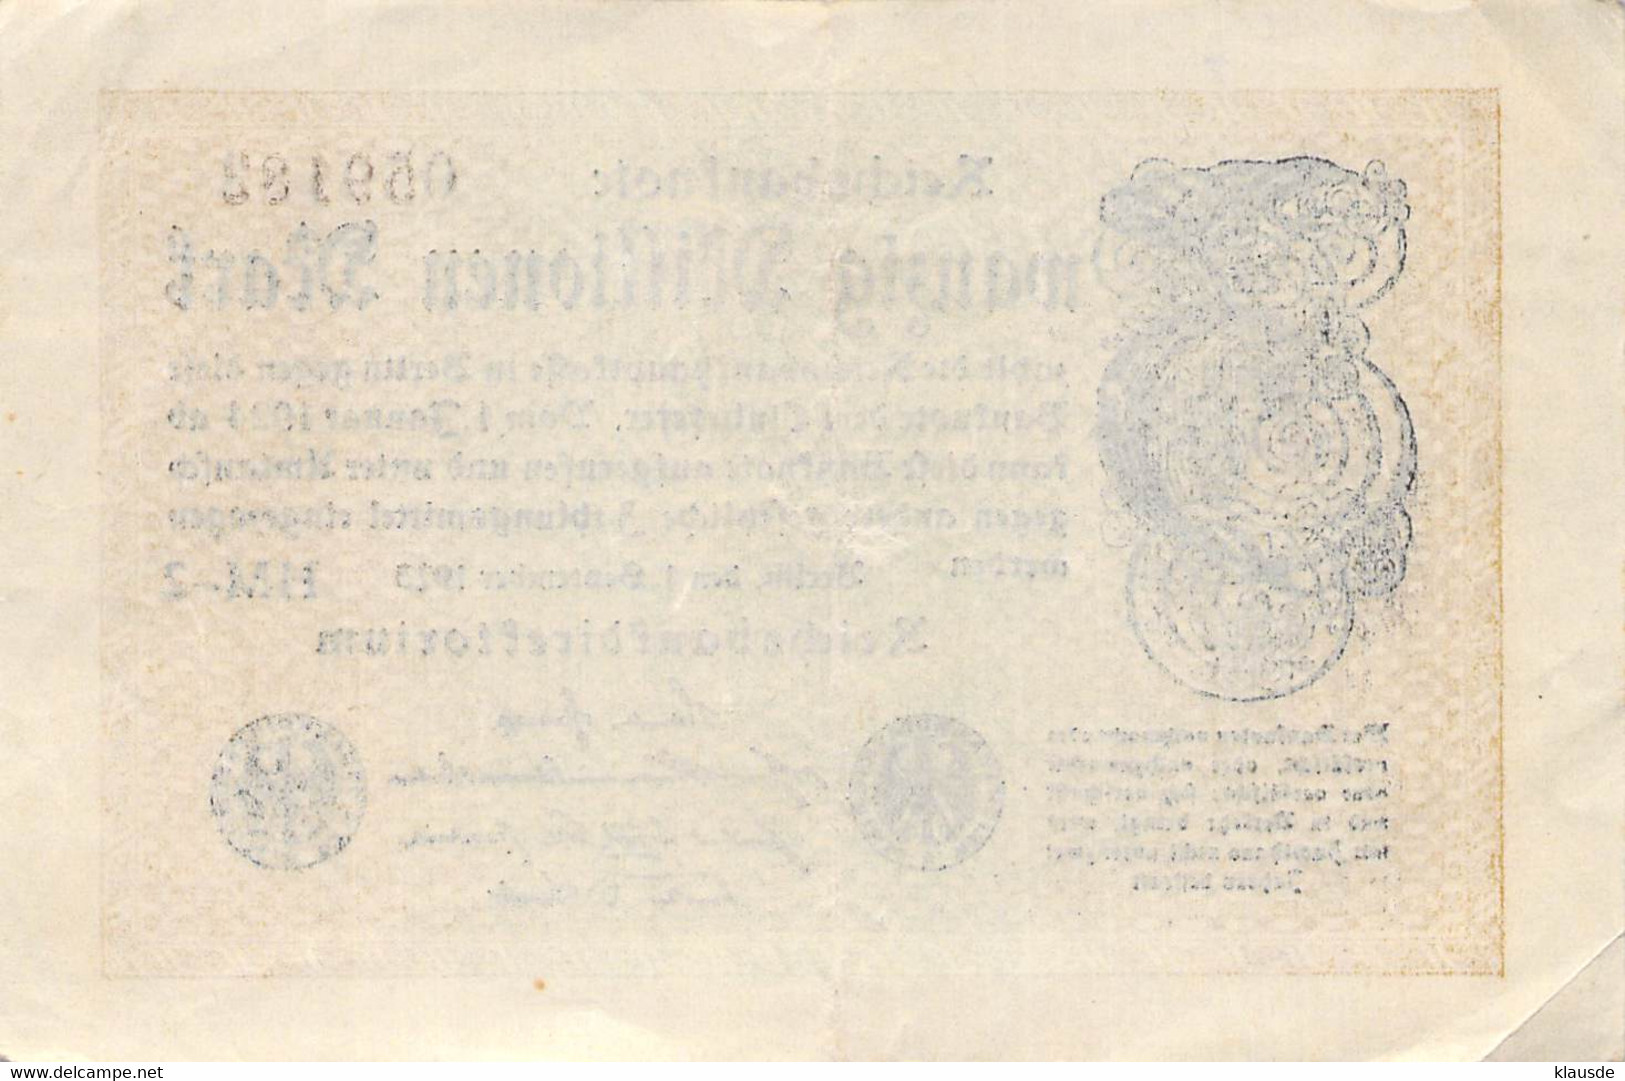 20 Mio Mark Reichsbanknote VF/F (III) - 20 Mio. Mark